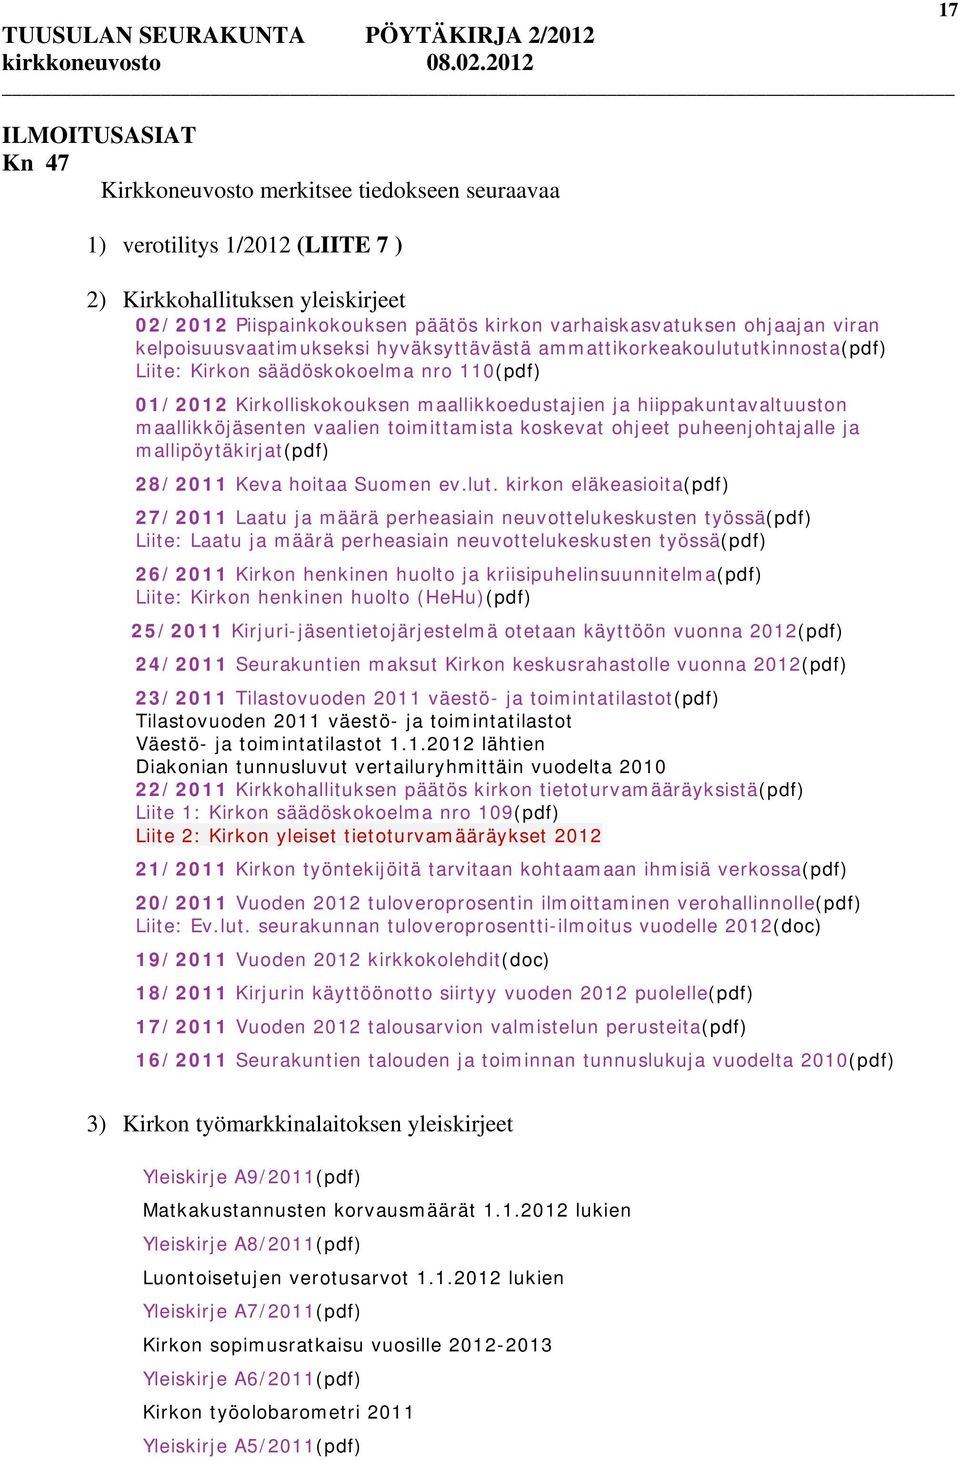 hiippakuntavaltuuston maallikköjäsenten vaalien toimittamista koskevat ohjeet puheenjohtajalle ja mallipöytäkirjat(pdf) 28/2011 Keva hoitaa Suomen ev.lut.